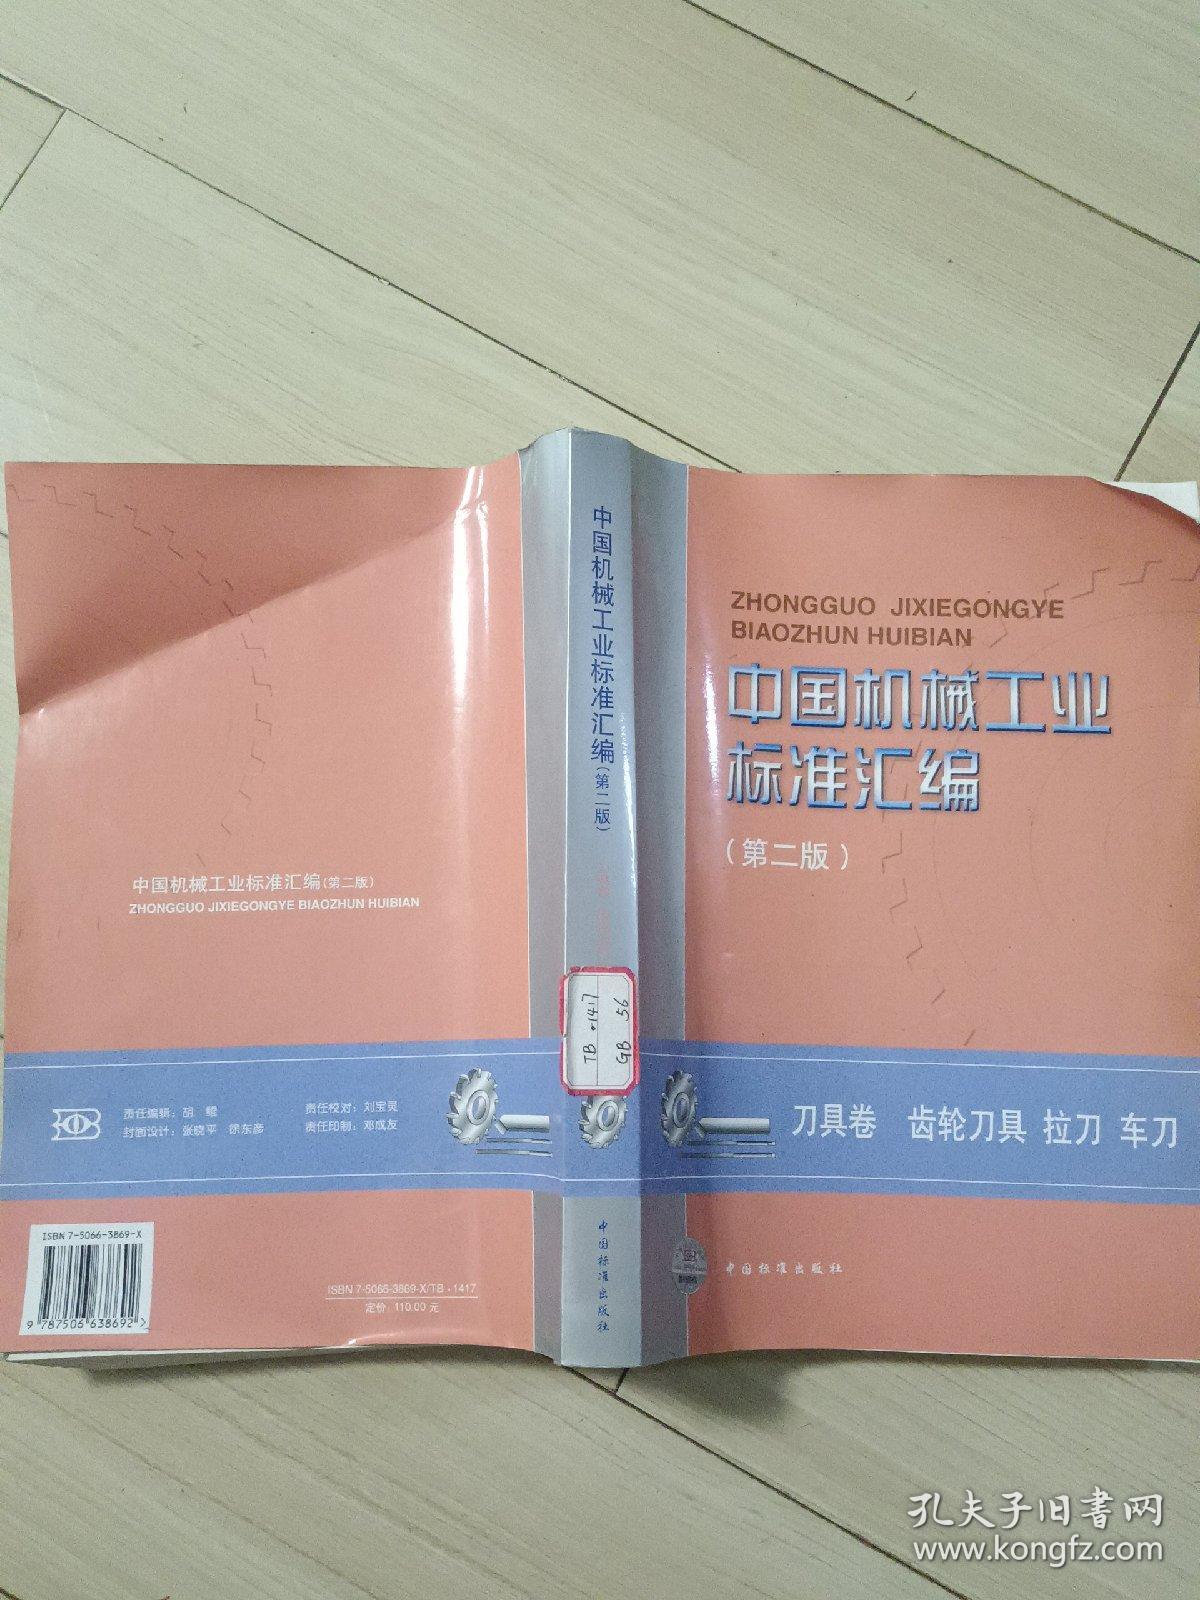 中国机械工业标准汇编(第二版)